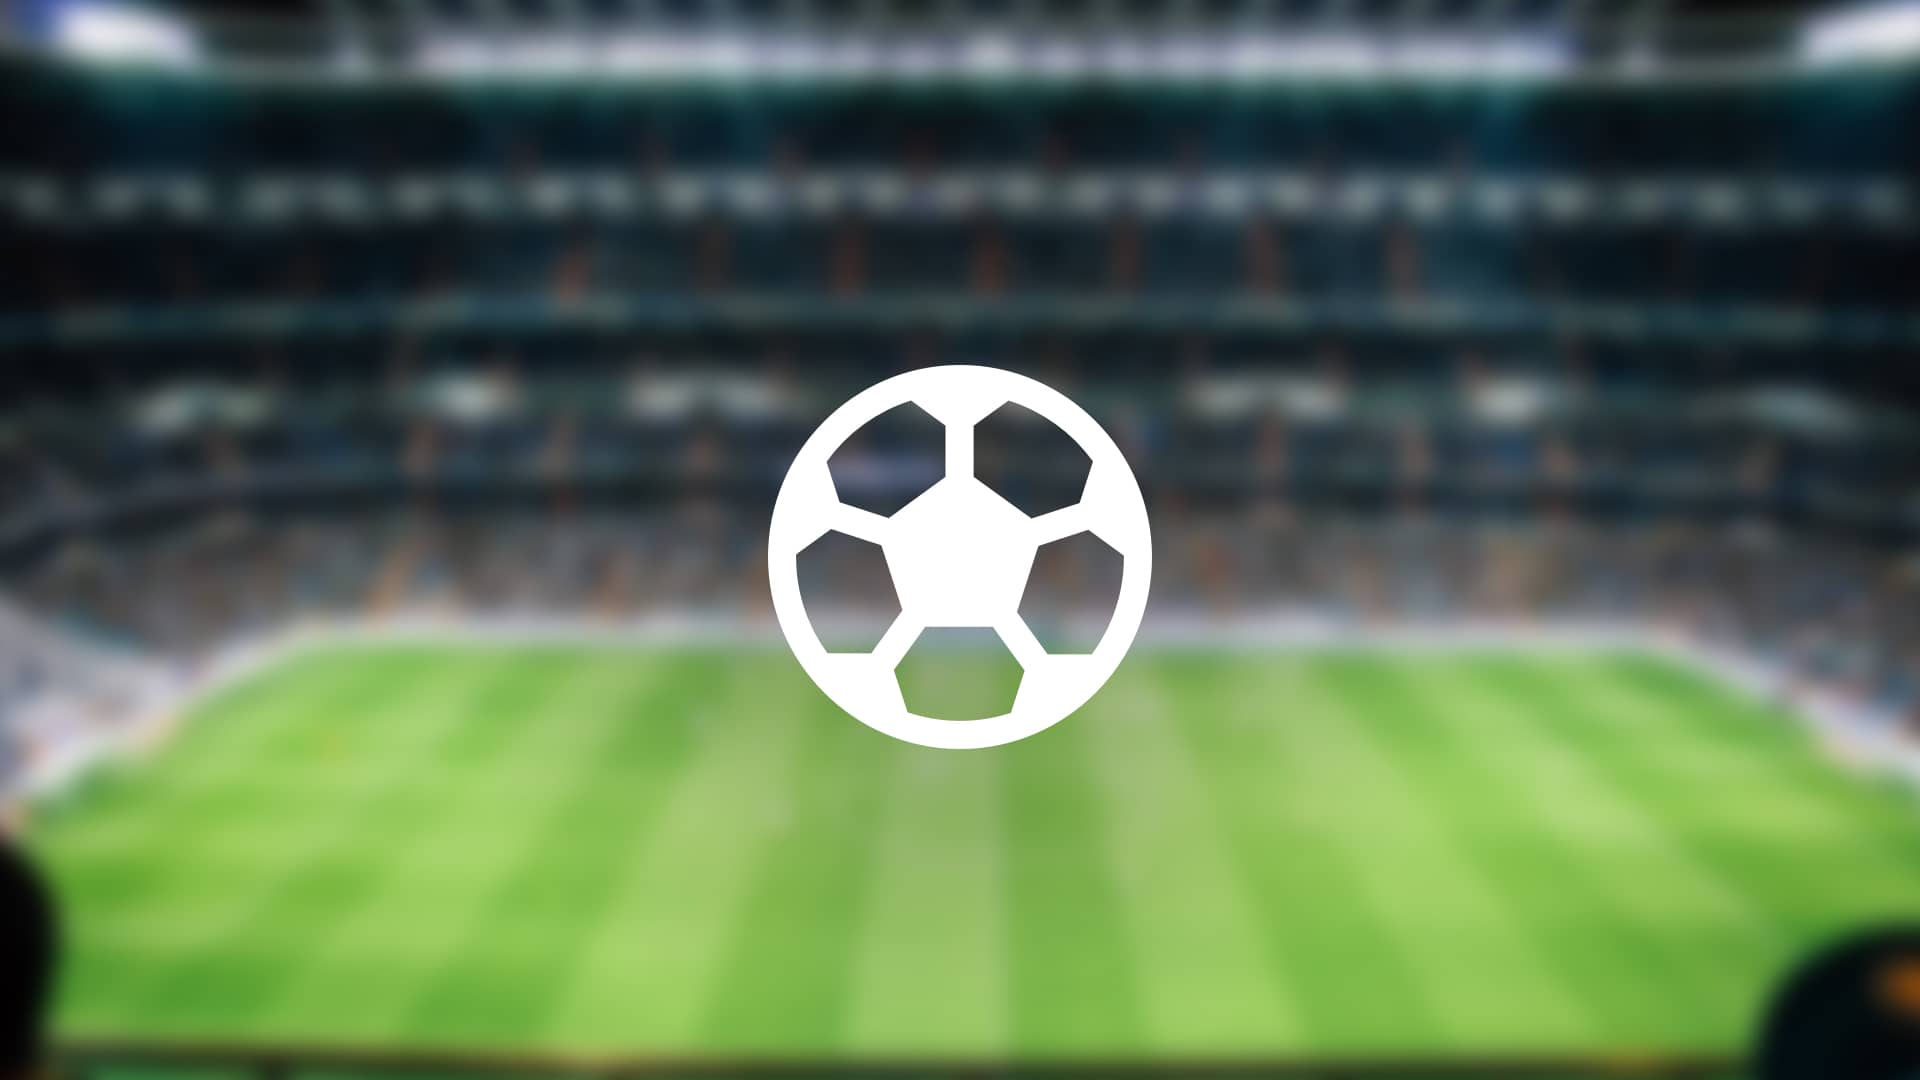 Dónde ver todo el fútbol en directo y online: opciones y precios | Enero 2023